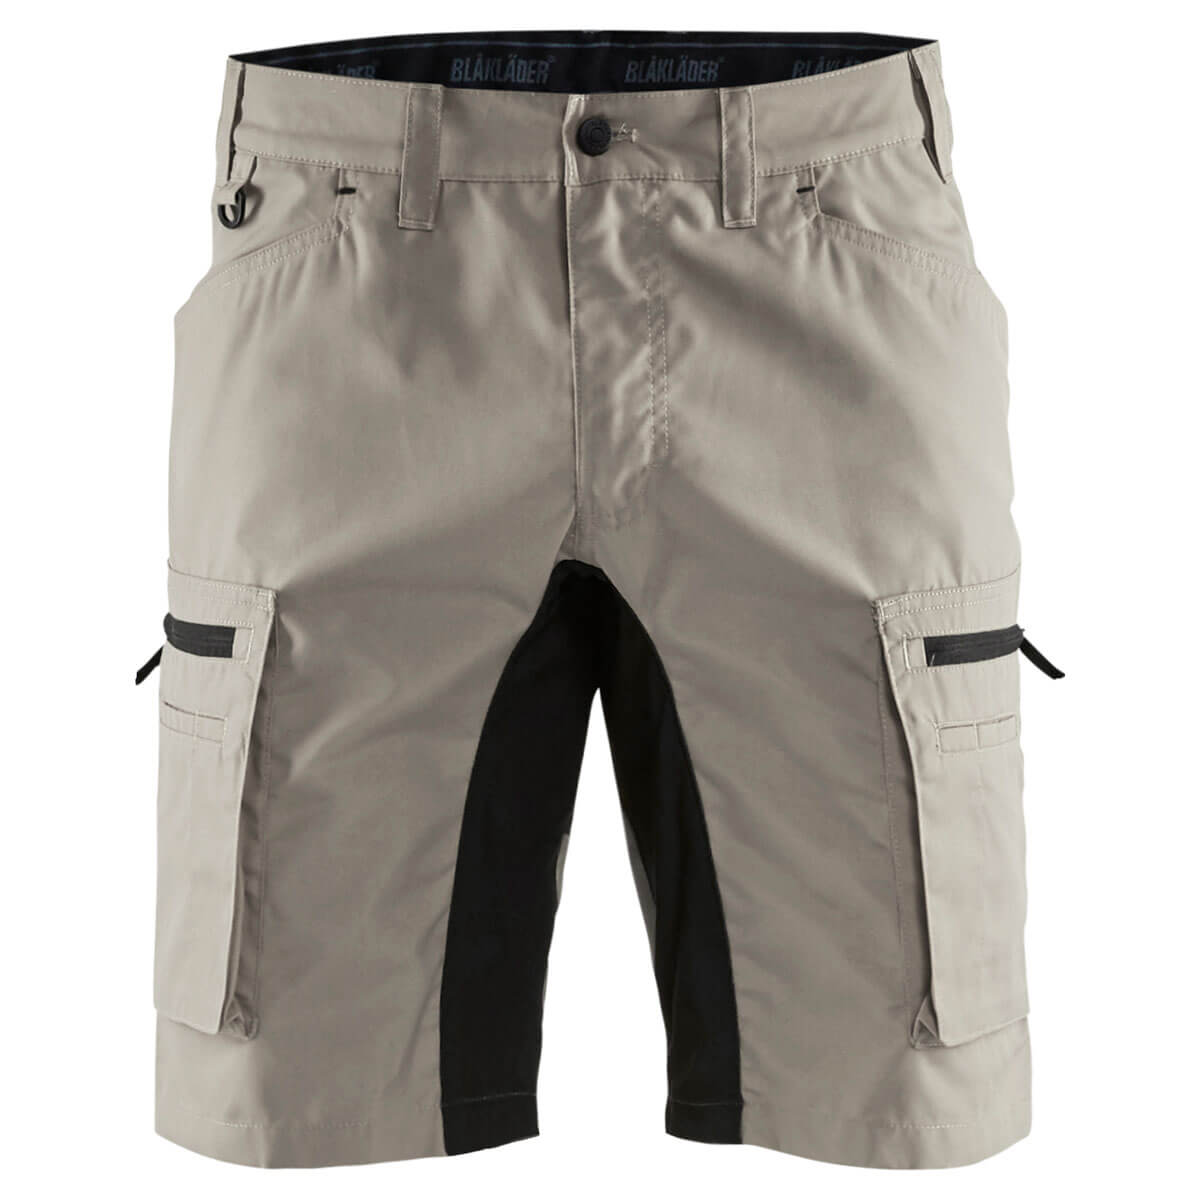 Blakläder light shorts with stretch 1449